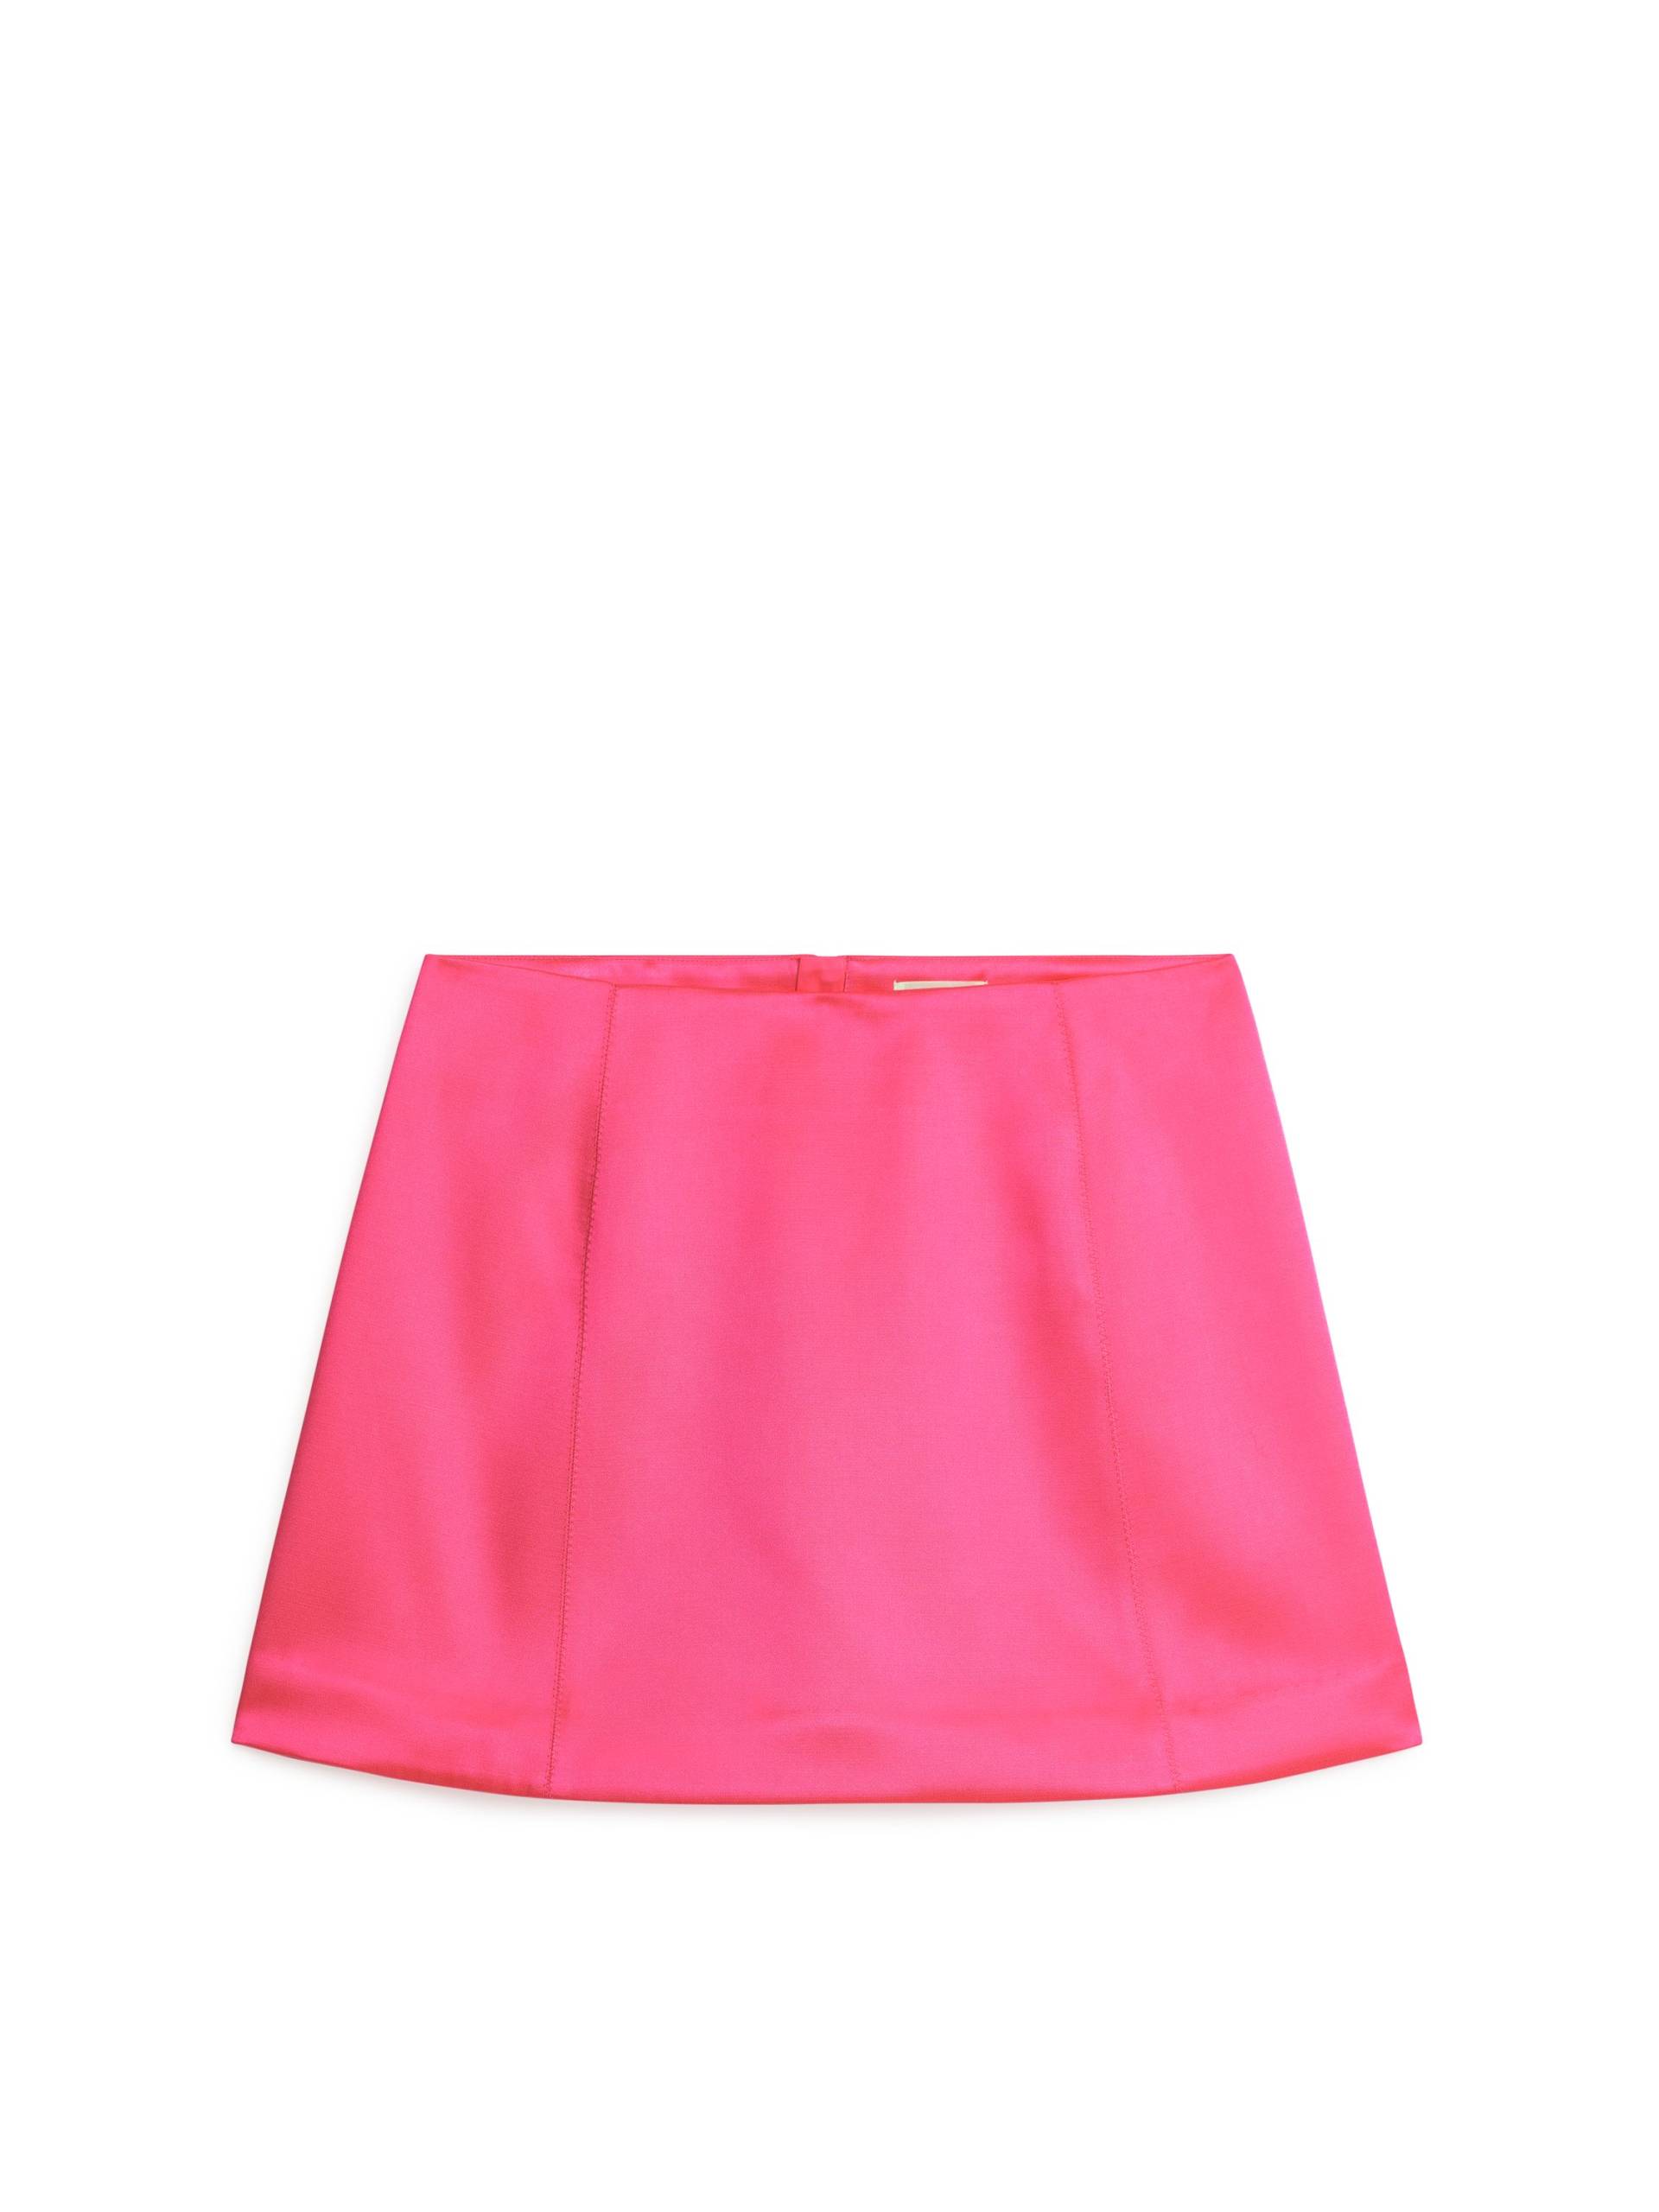 Arket Minirock aus Satin Rosa, Röcke in Größe 40. Farbe: Pink 004 von Arket